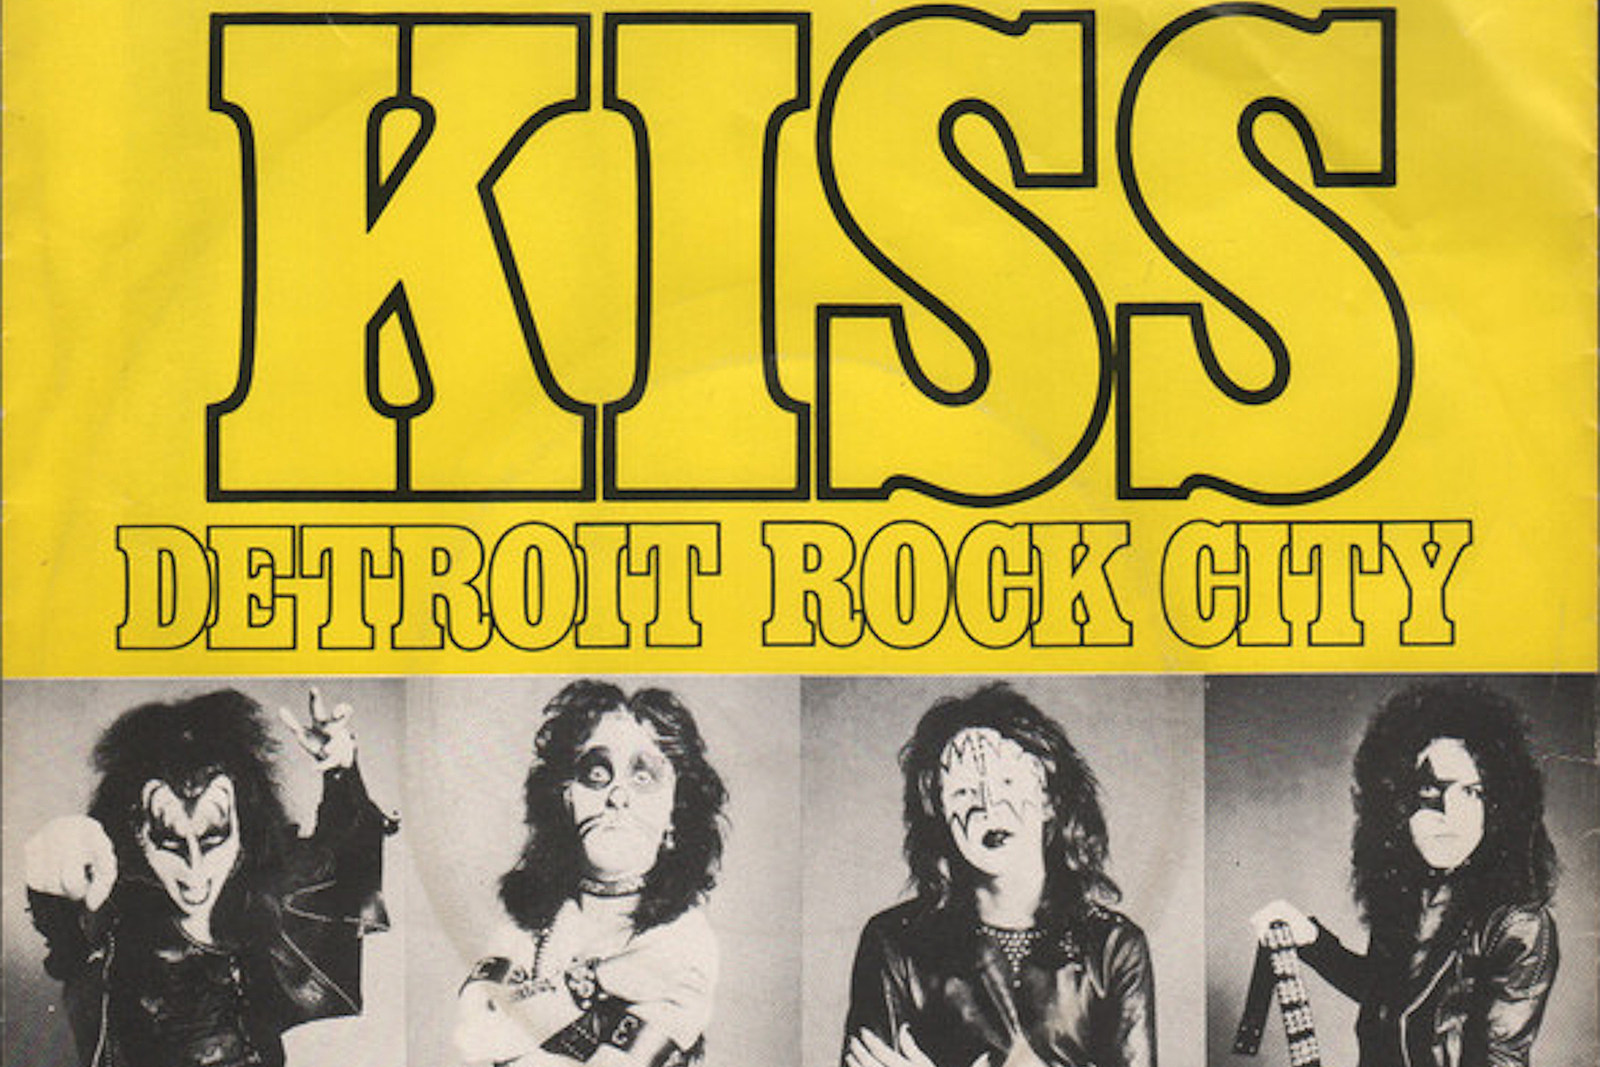 Paul Stanley Explains the Evolution of Kiss' 'Detroit Rock City'